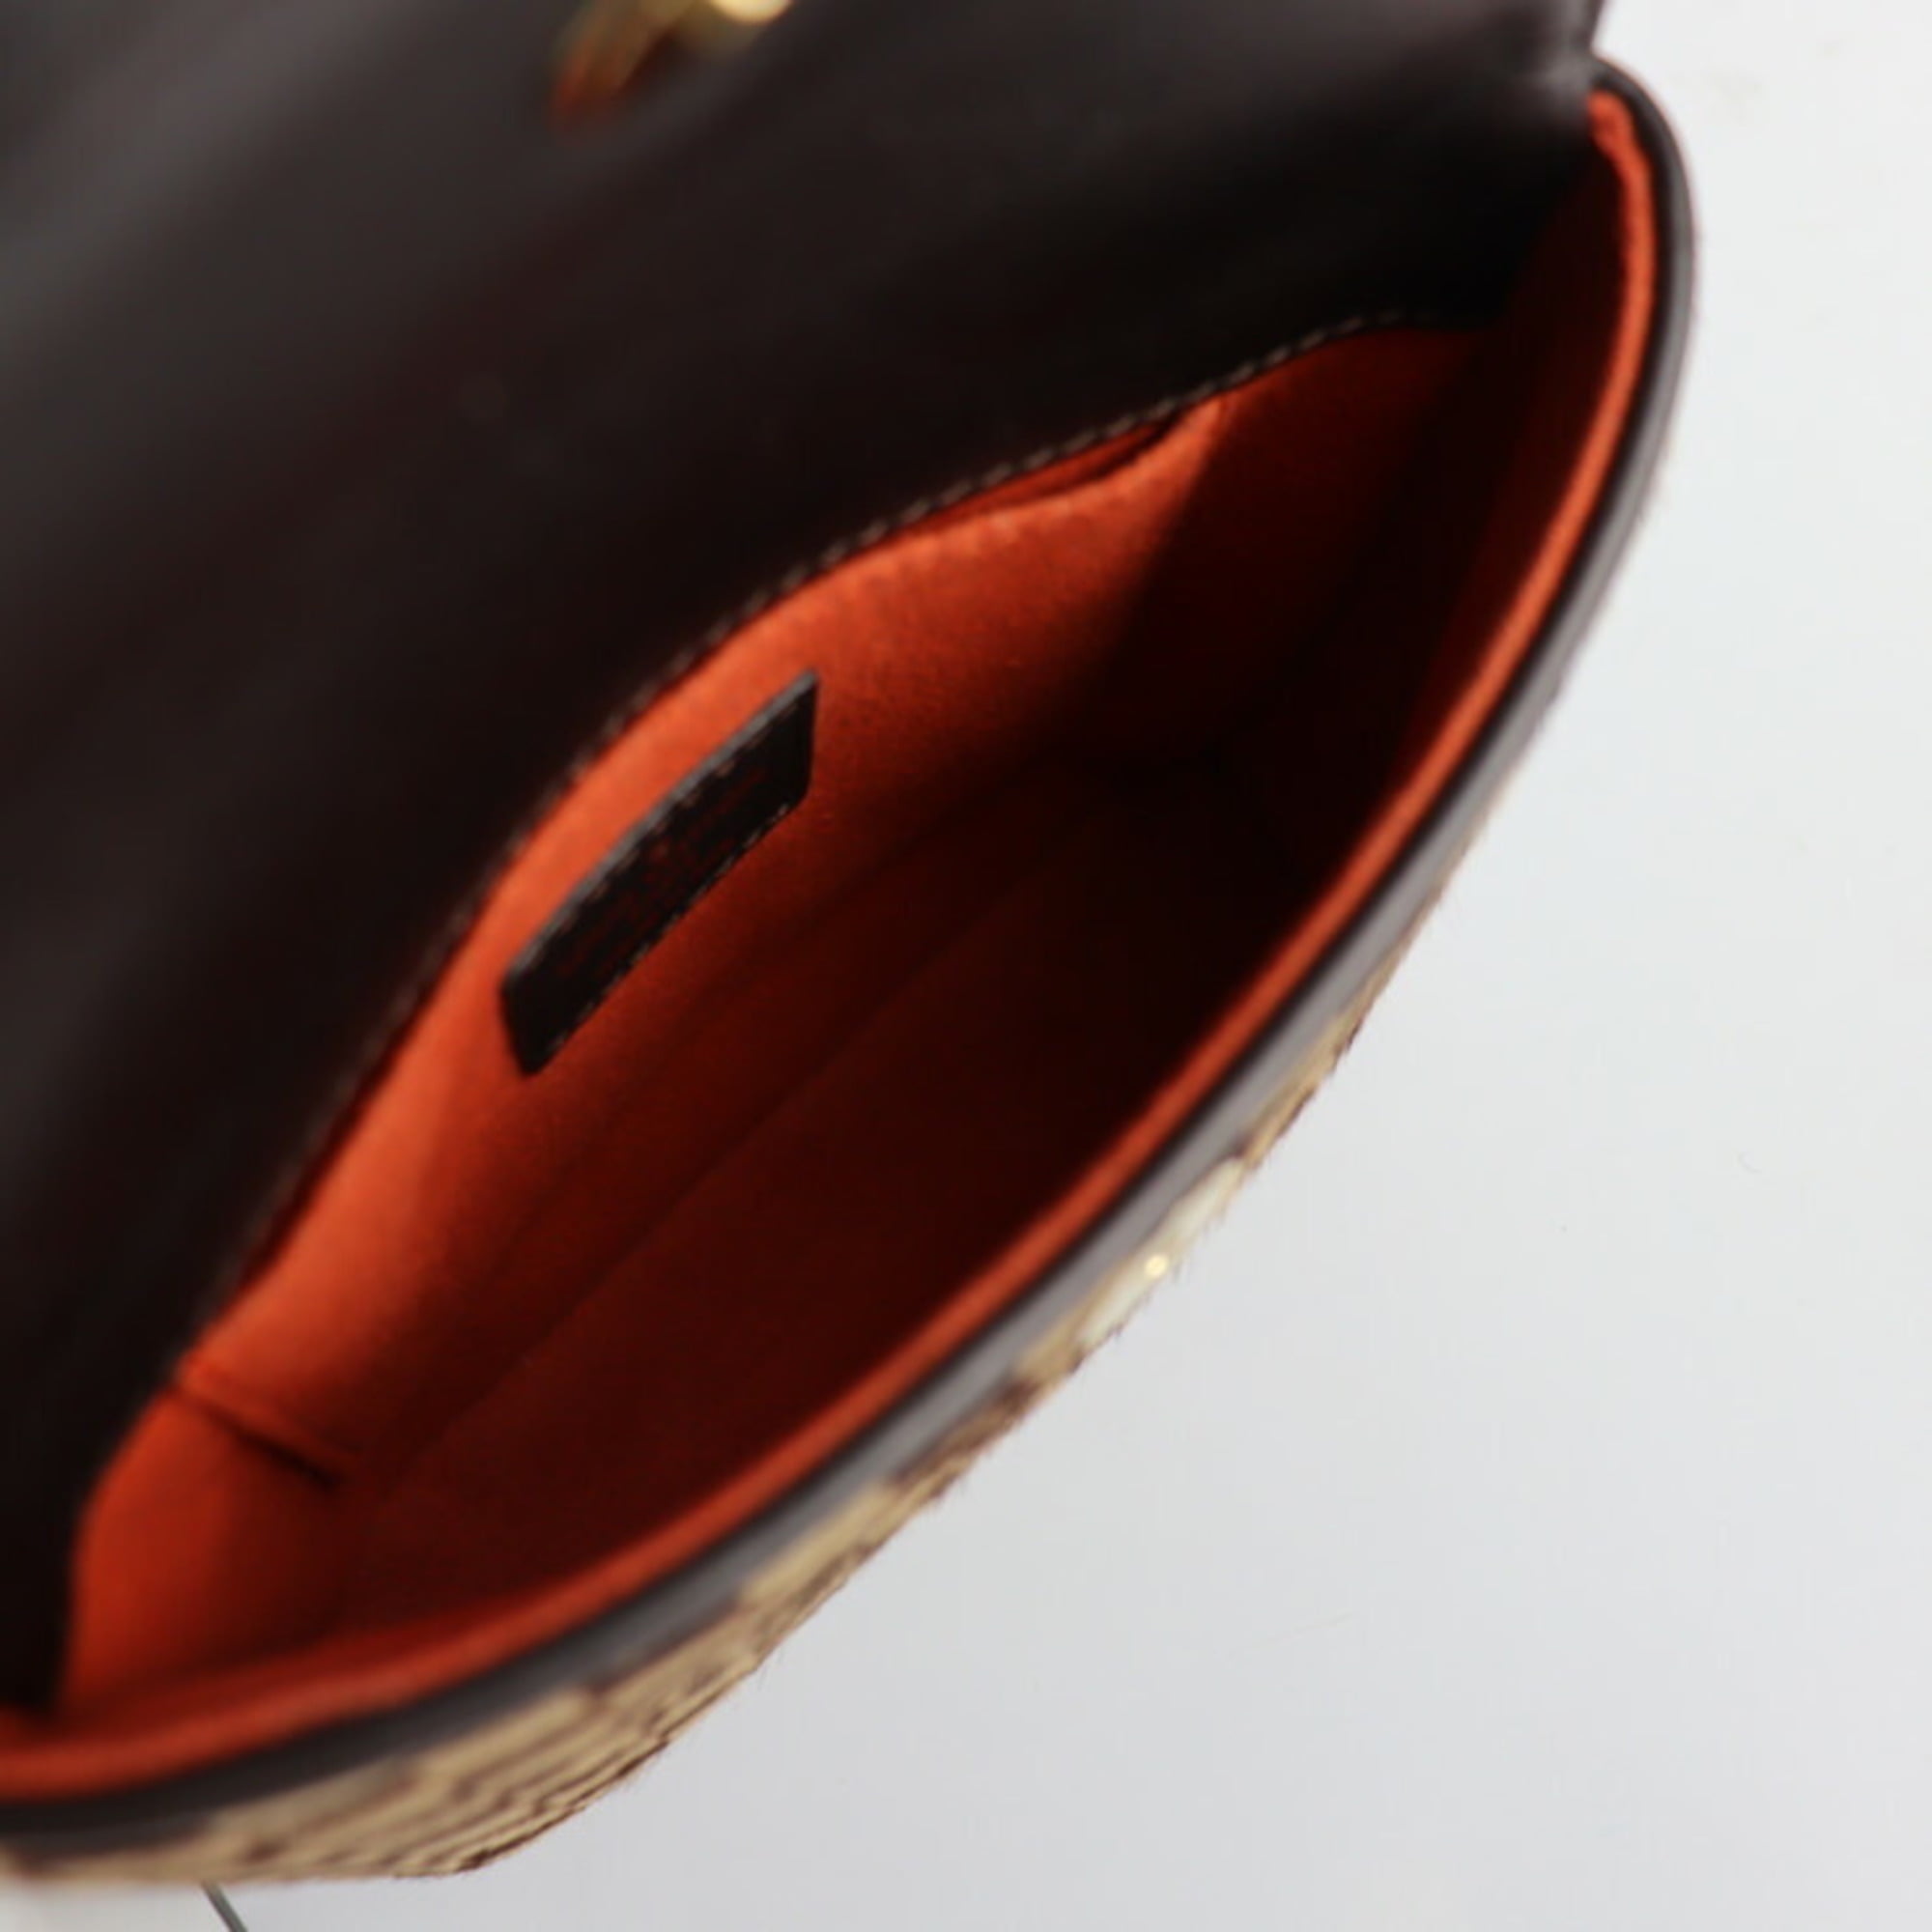 Louis Vuitton Orange Damier Checkered Jacket – Savonches